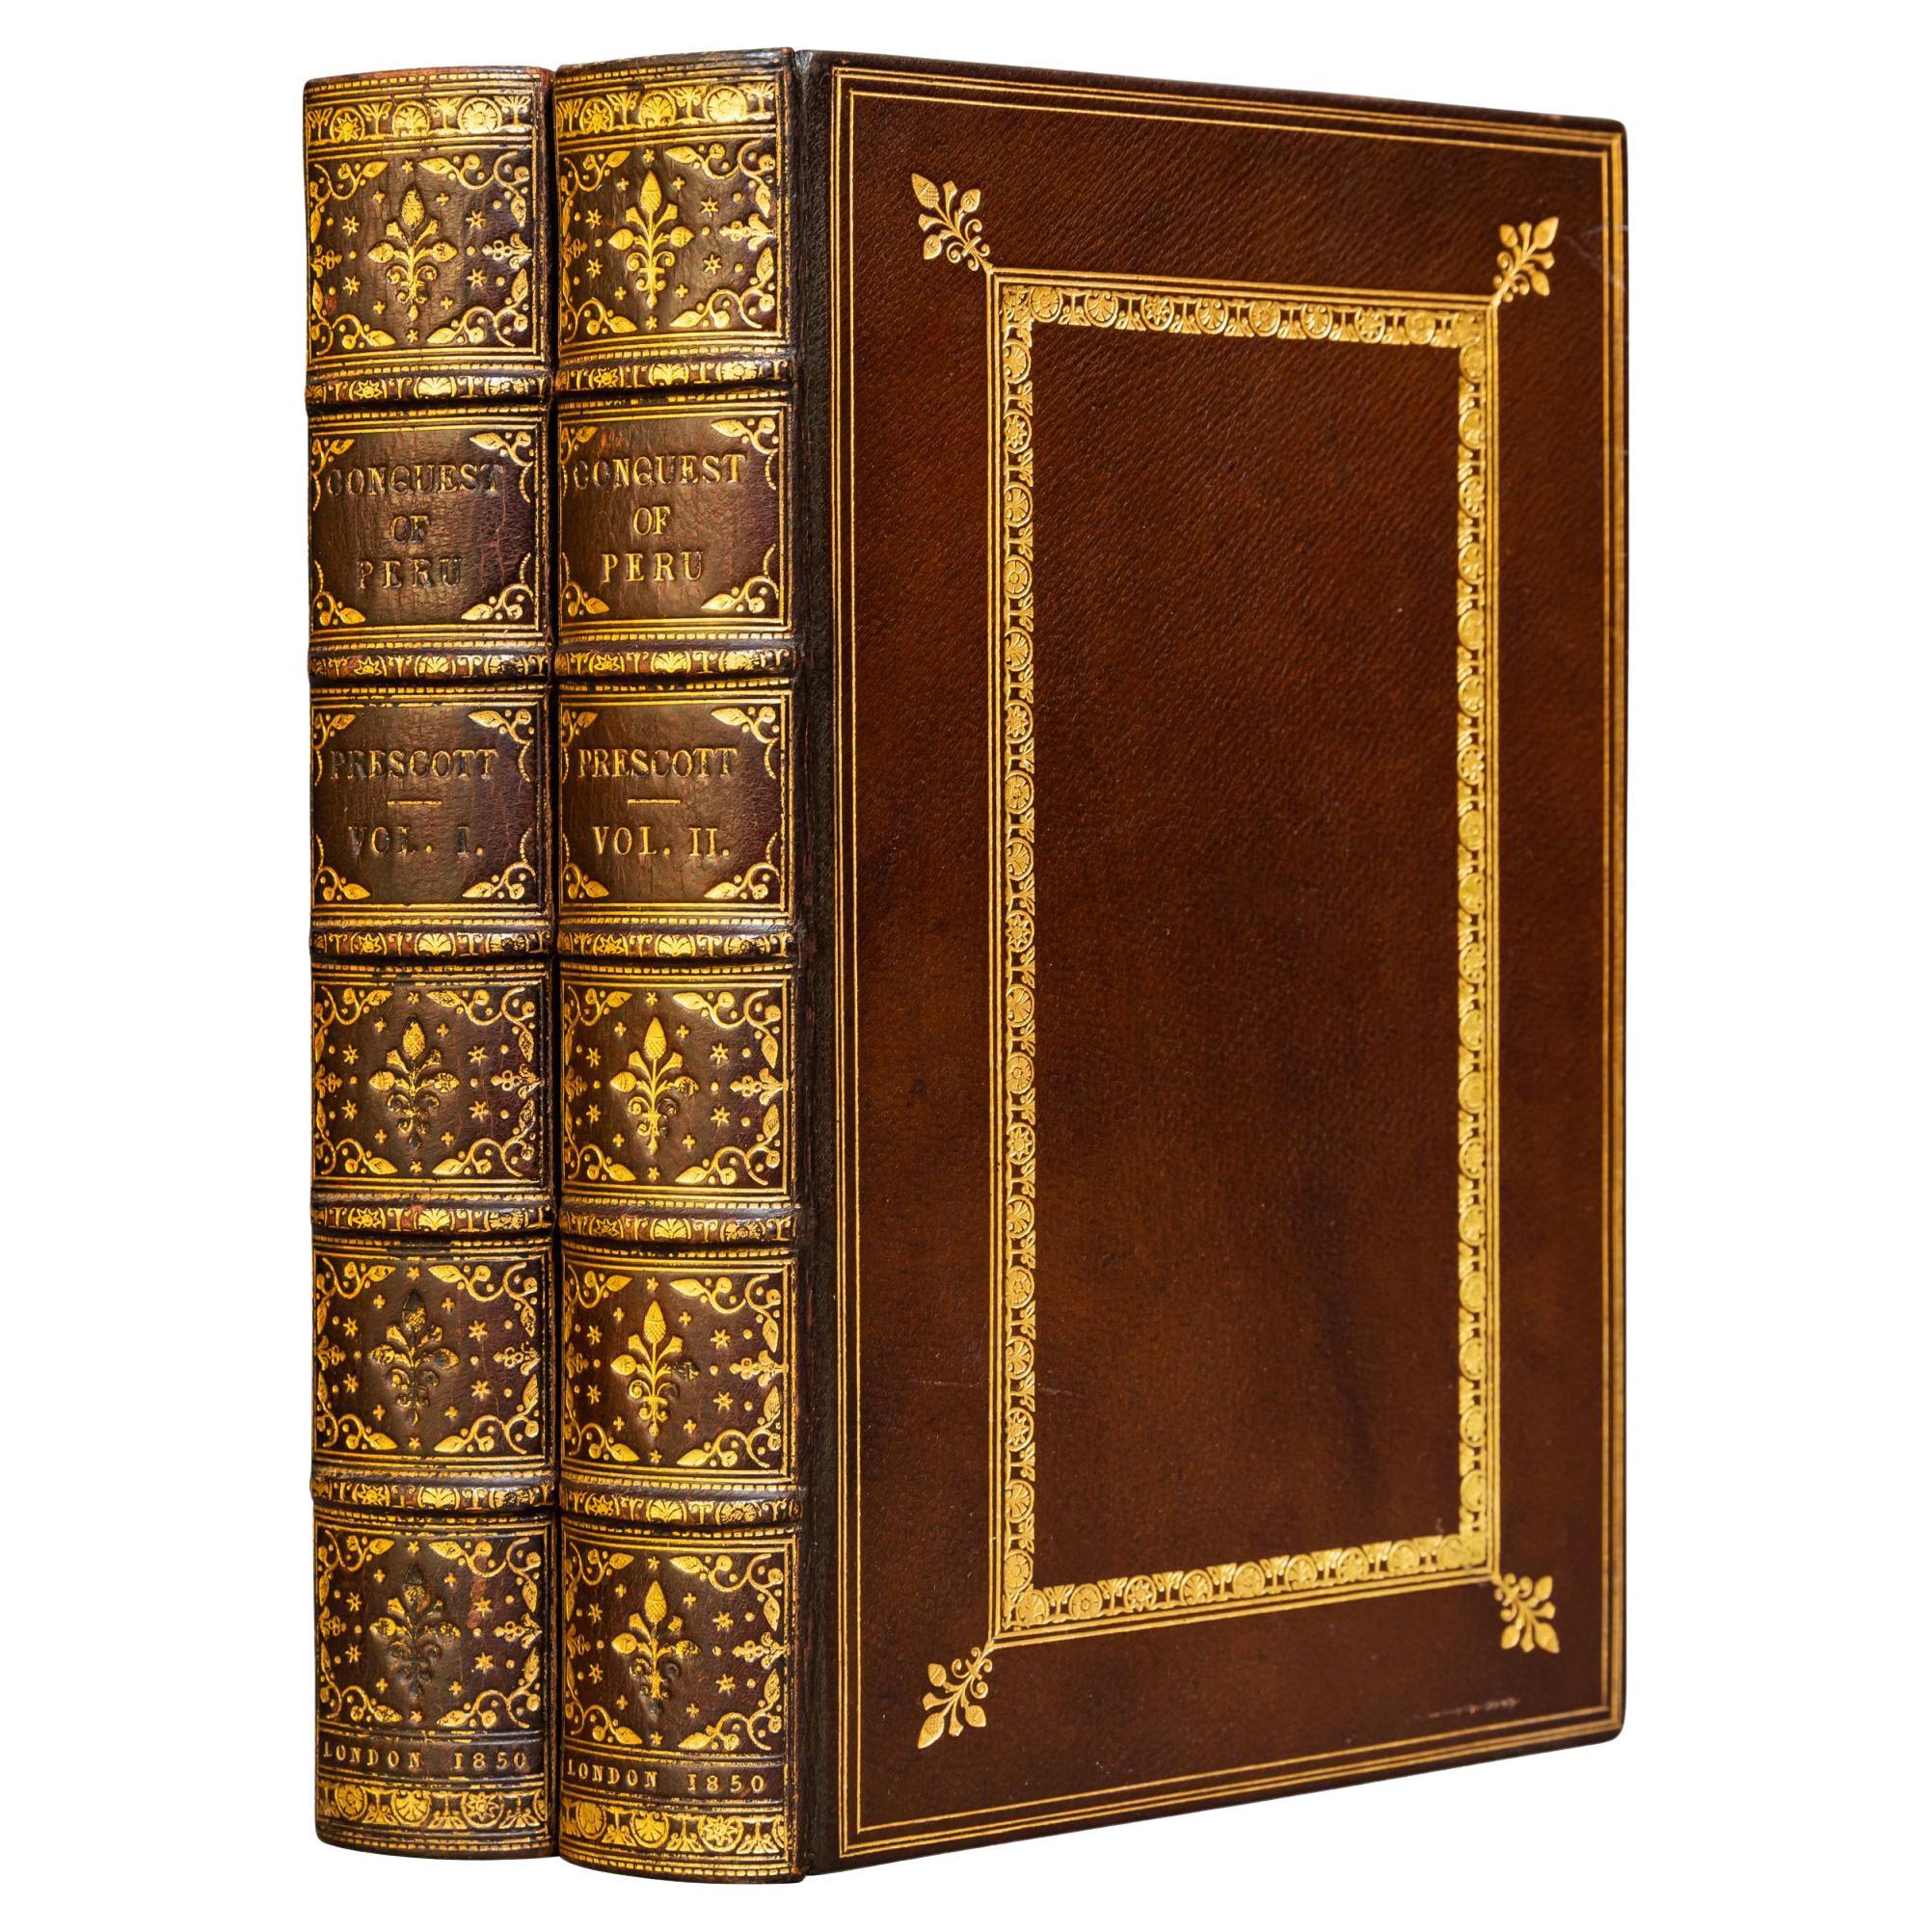 'Book Sets' 2 Volumes, William H. Prescott, The Conquest of Peru